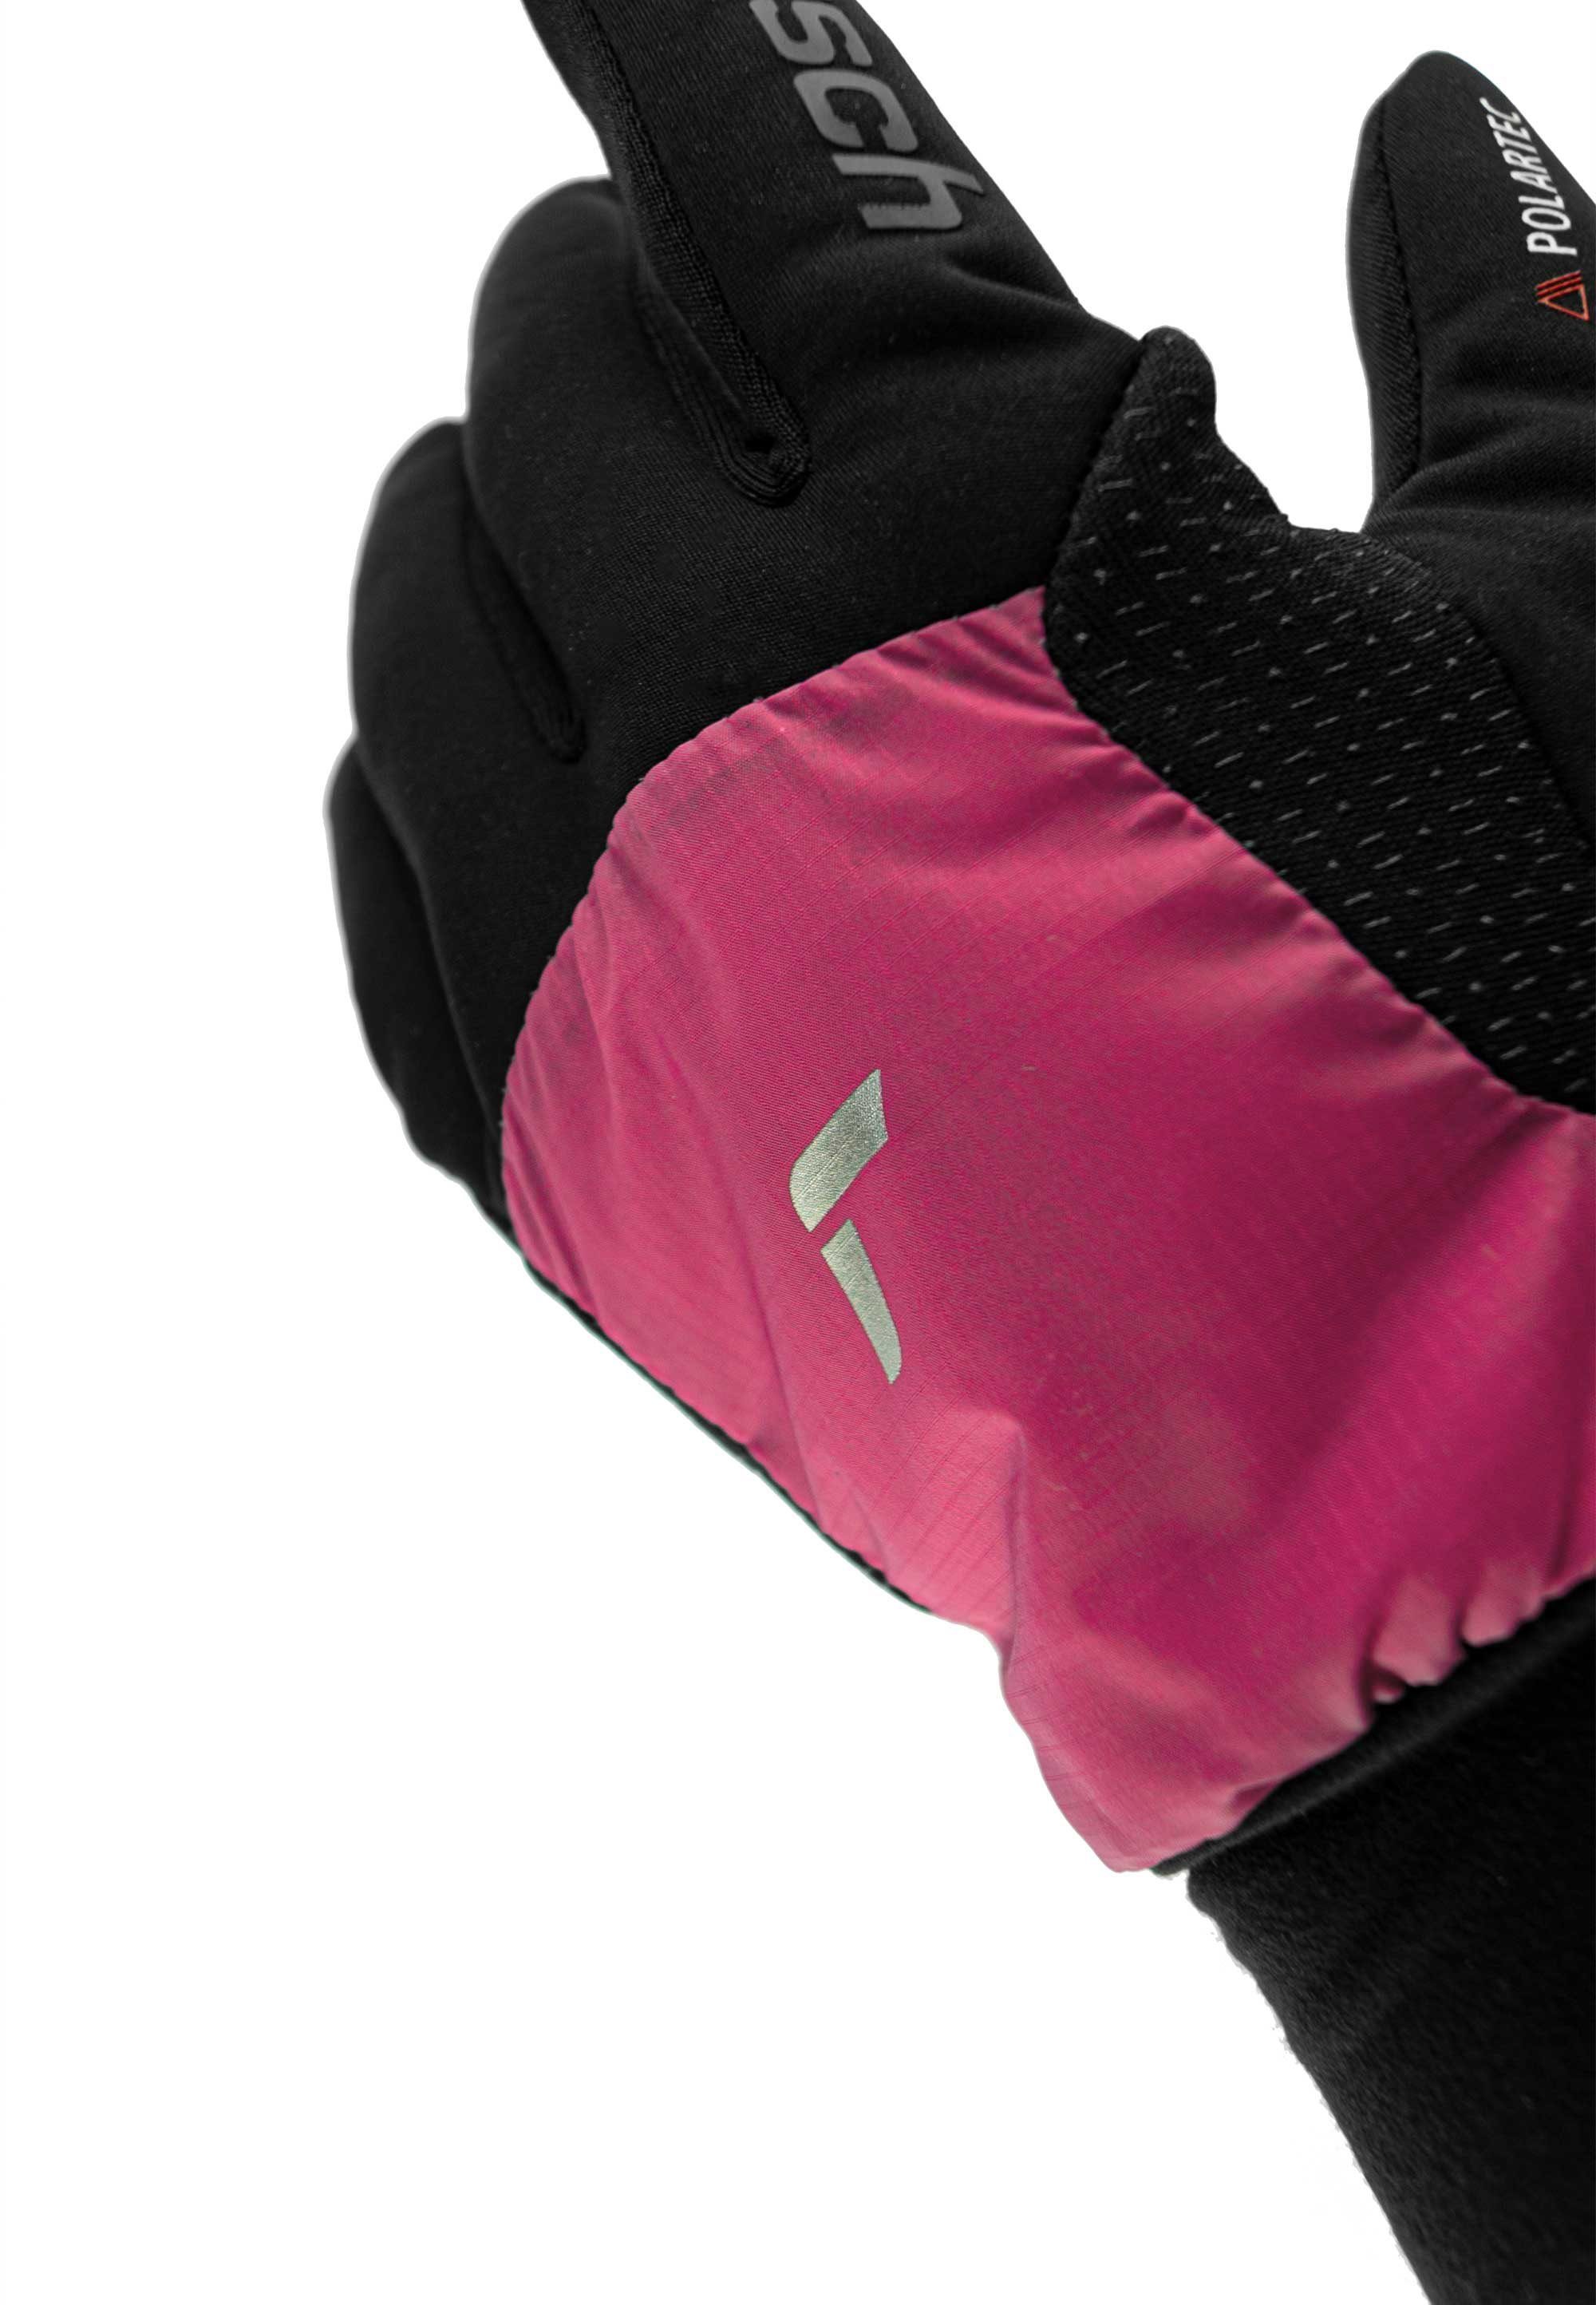 schwarz-pink Touchscreen-Funktion praktischer Reusch Hybrid Skihandschuhe mit Garhwal